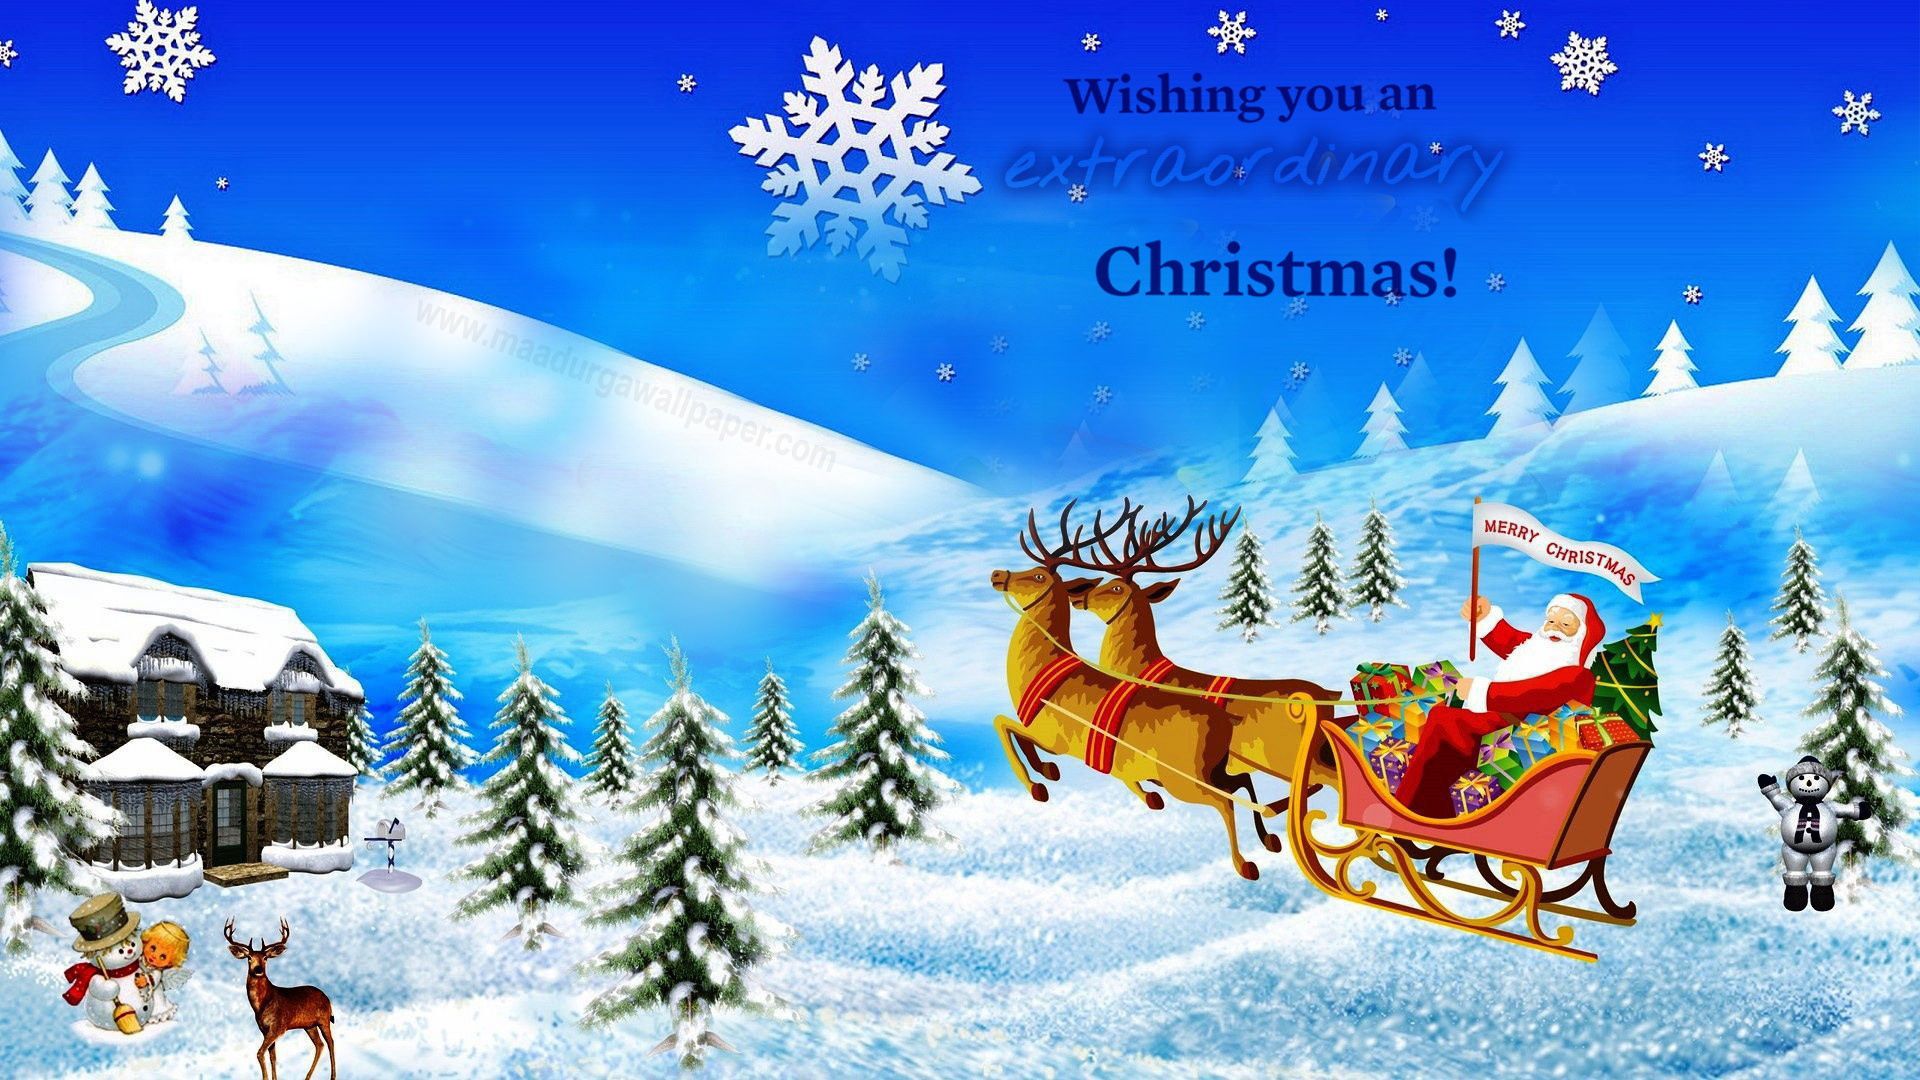 산타 클로스 배경 화면 무료 다운로드,산타 클로스,순록,크리스마스 이브,사슴,크리스마스